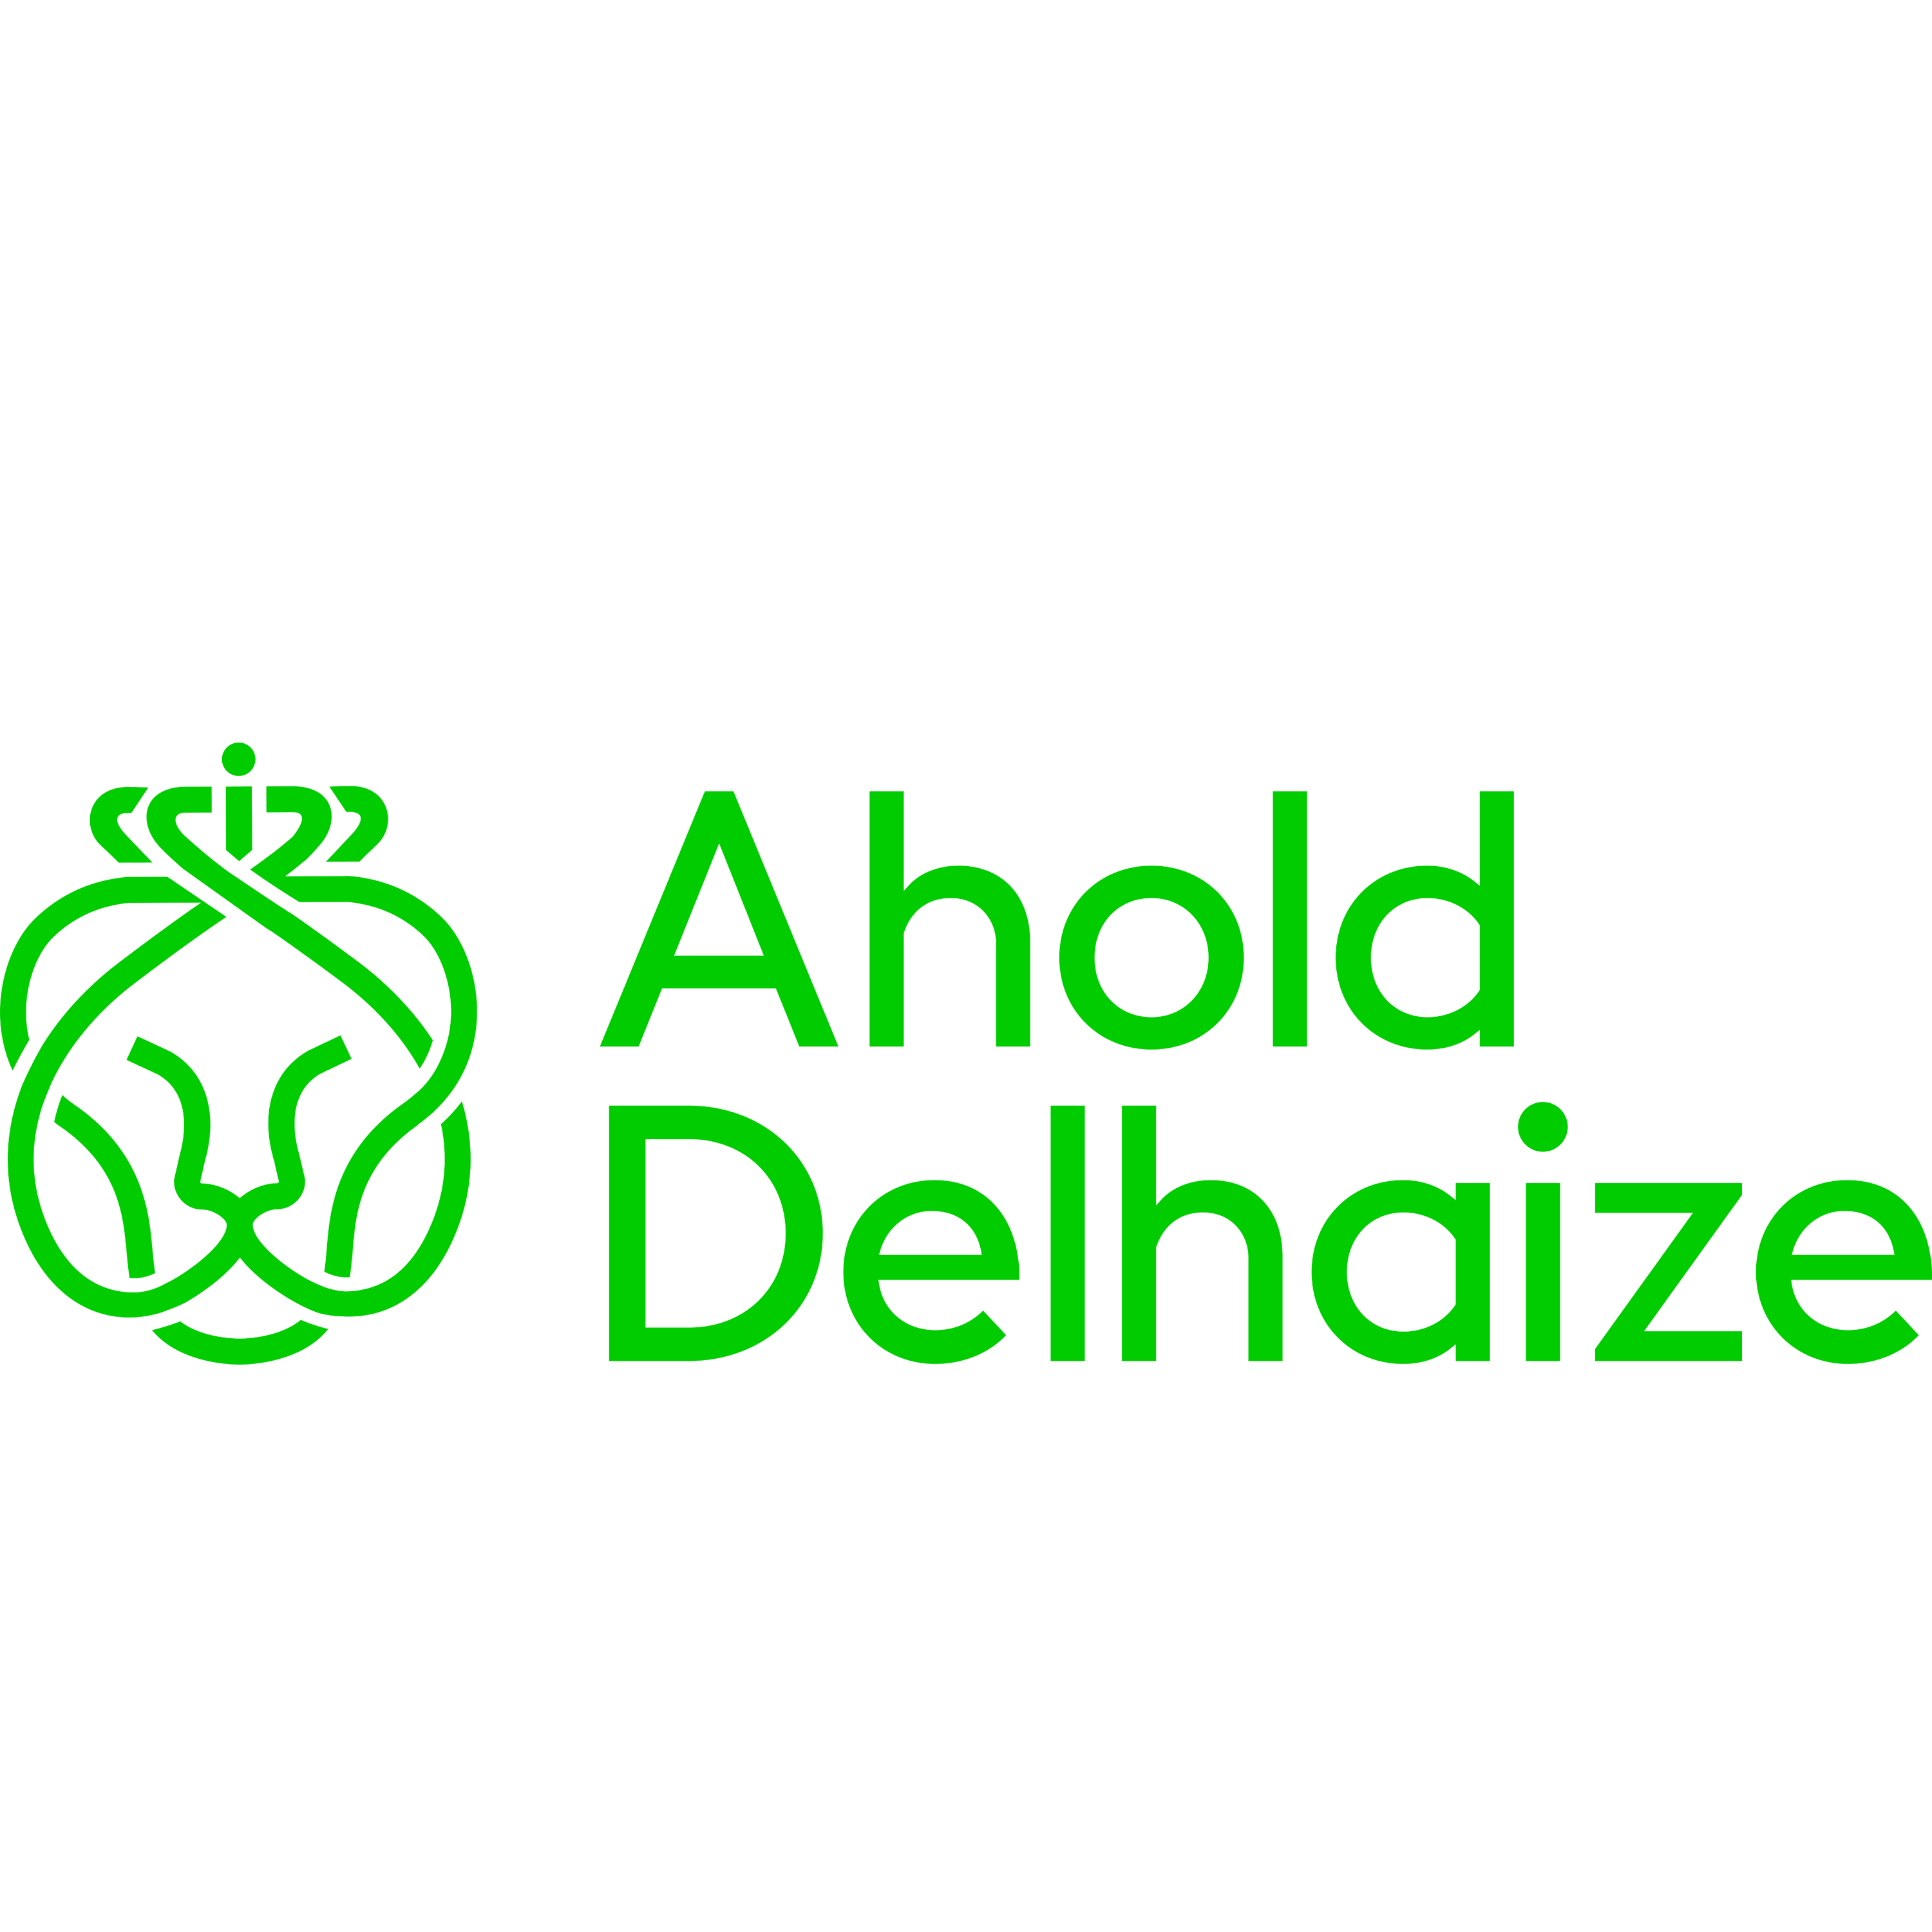 Ahold Delhaize Logo Transparent Image